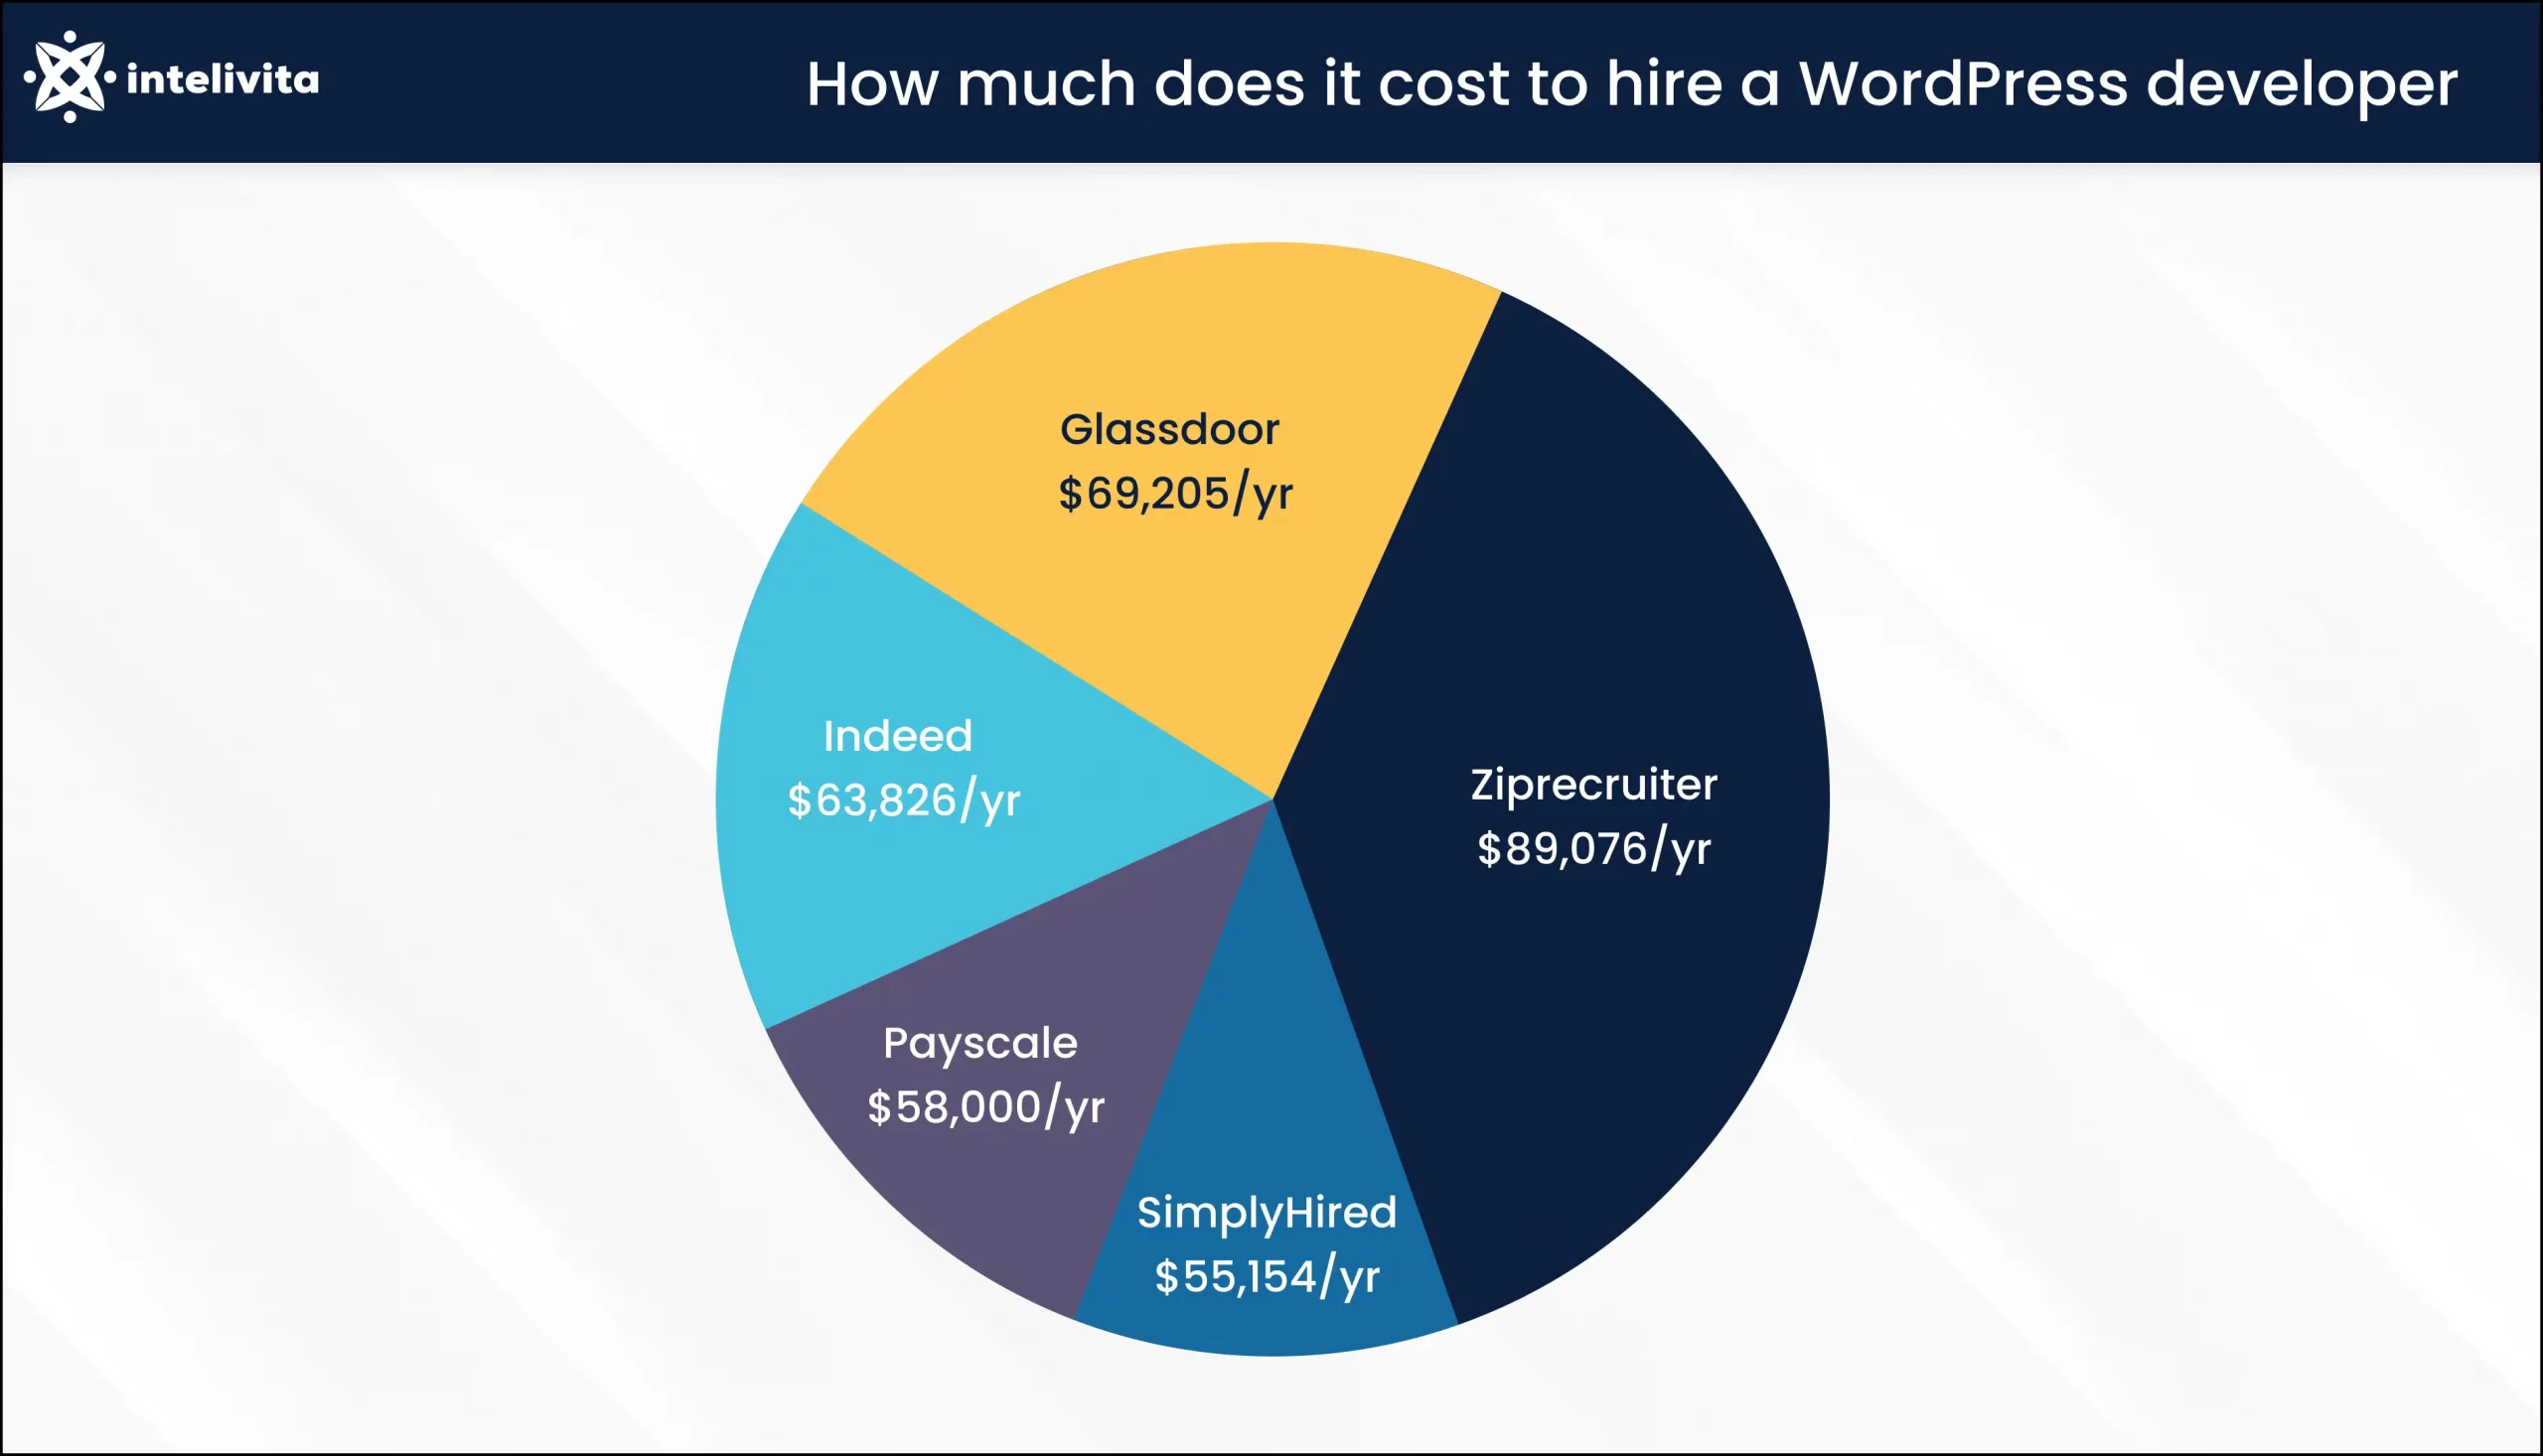 Imagen que muestra el coste de contratación de un desarrollador de WordPress al año en diferentes plataformas de contratación.